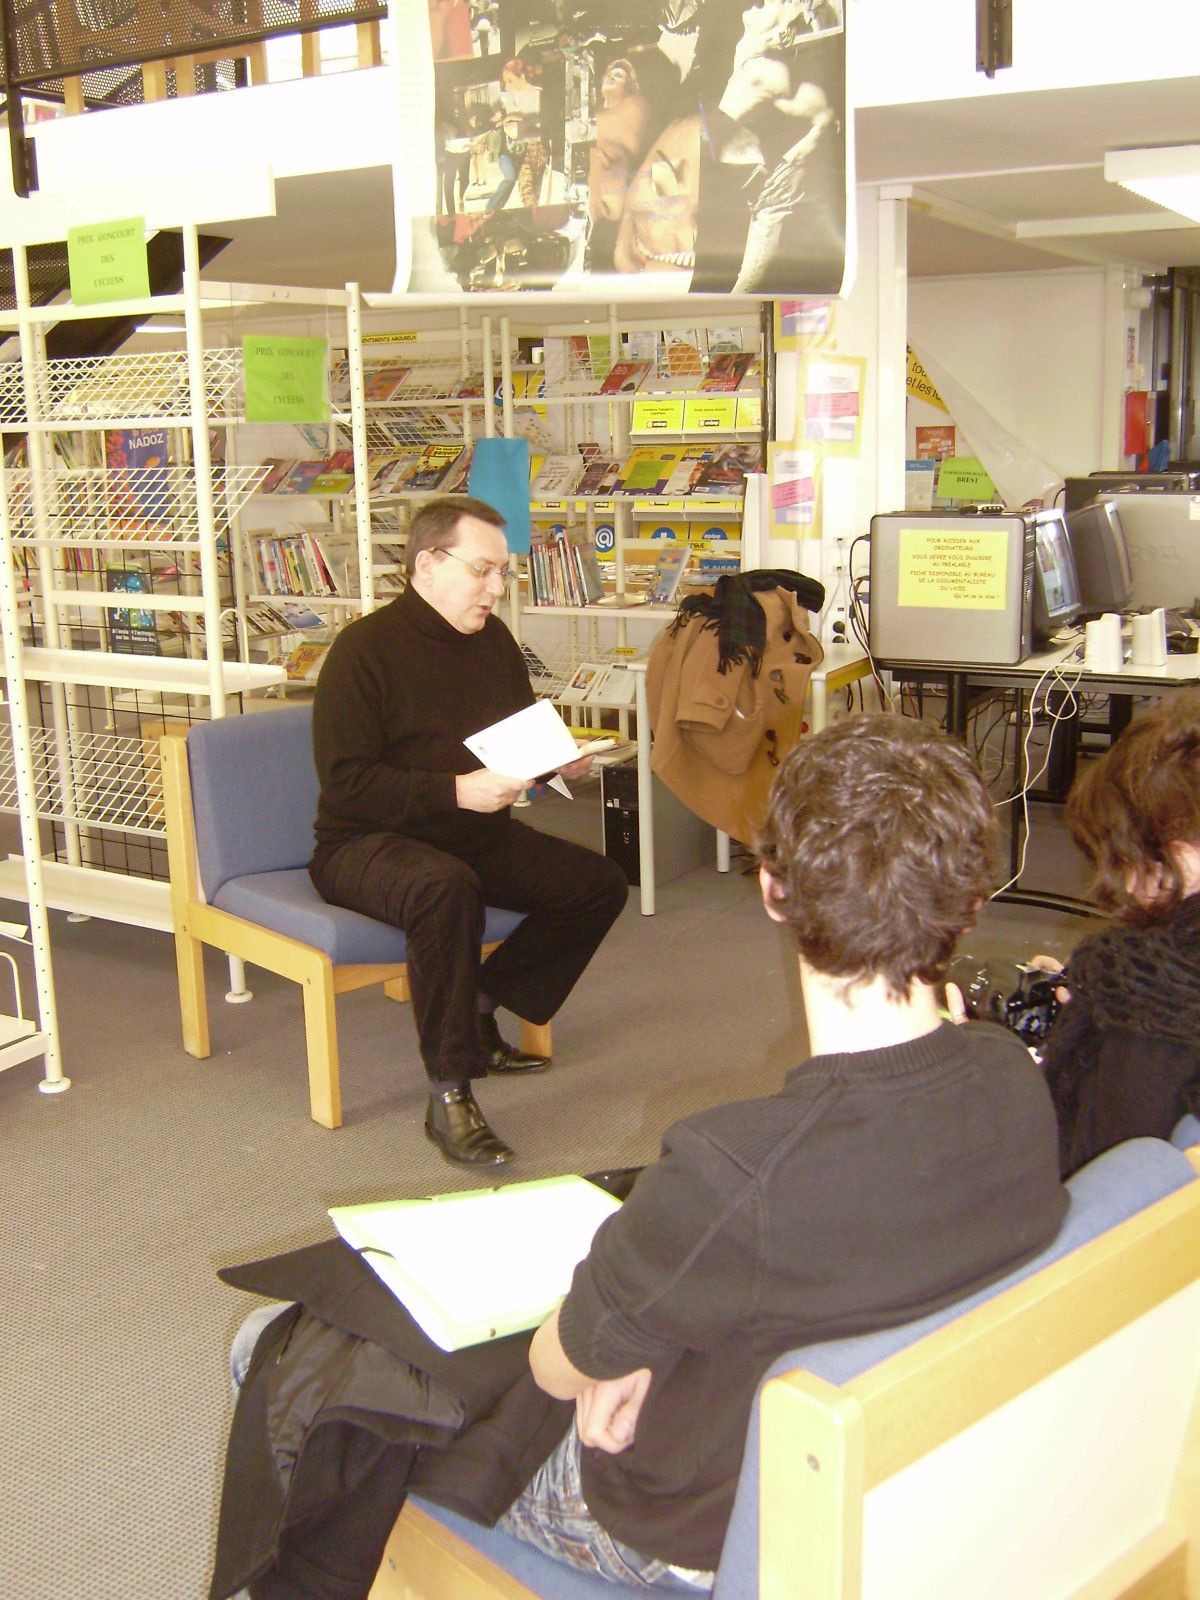 Le 20-01-11, au CDI du Lycée de l'Iroise, les lycéens d'i-voix ont rencontré l'écrivain JERÔME LEROY, auteur du recueil Un dernier verre en Atlantide.